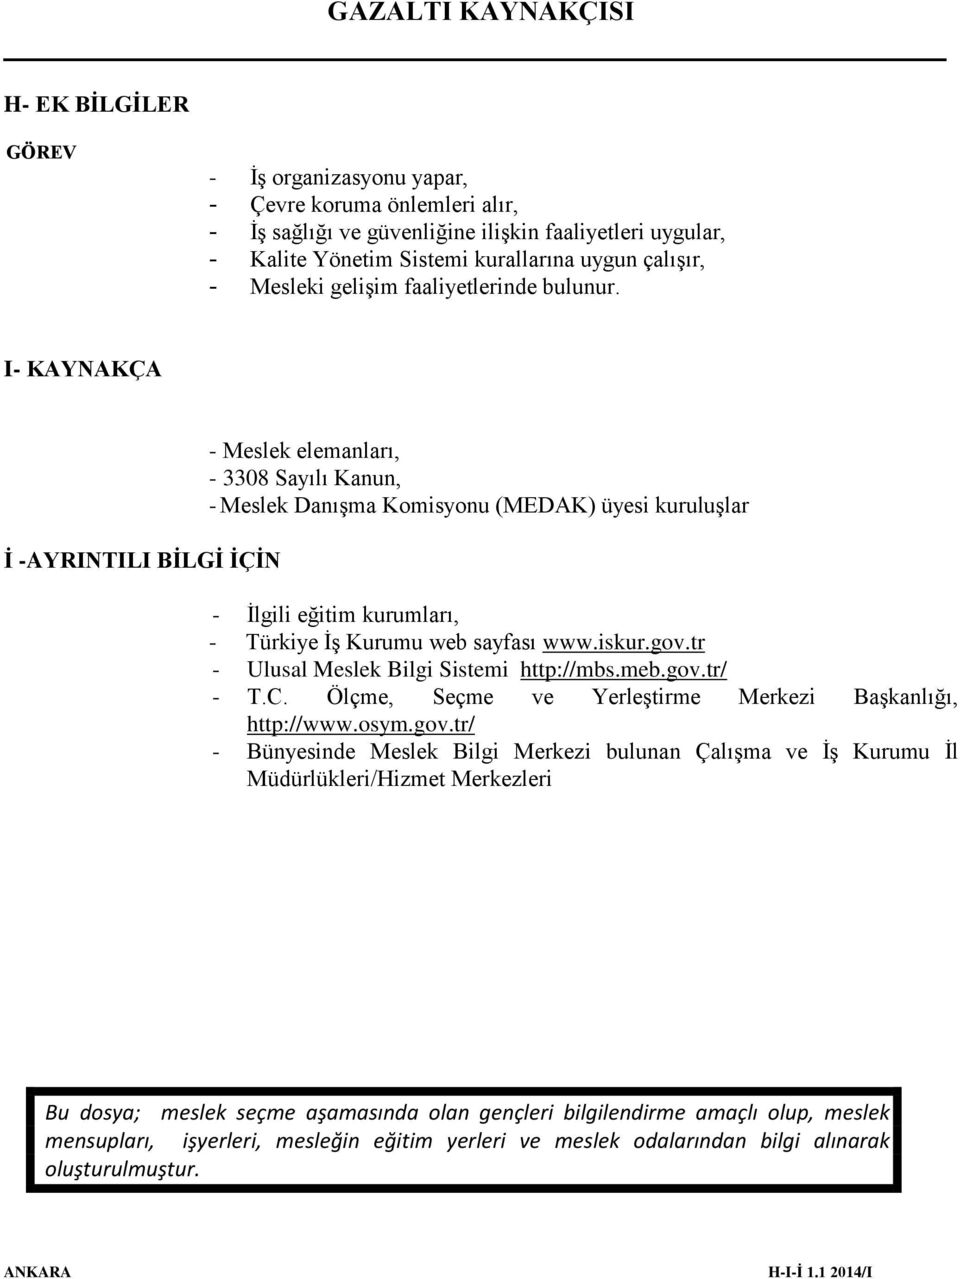 I- KAYNAKÇA İ -AYRINTILI BİLGİ İÇİN - Meslek elemanları, - 3308 Sayılı Kanun, - Meslek Danışma Komisyonu (MEDAK) üyesi kuruluşlar - İlgili eğitim kurumları, - Türkiye İş Kurumu web sayfası www.iskur.